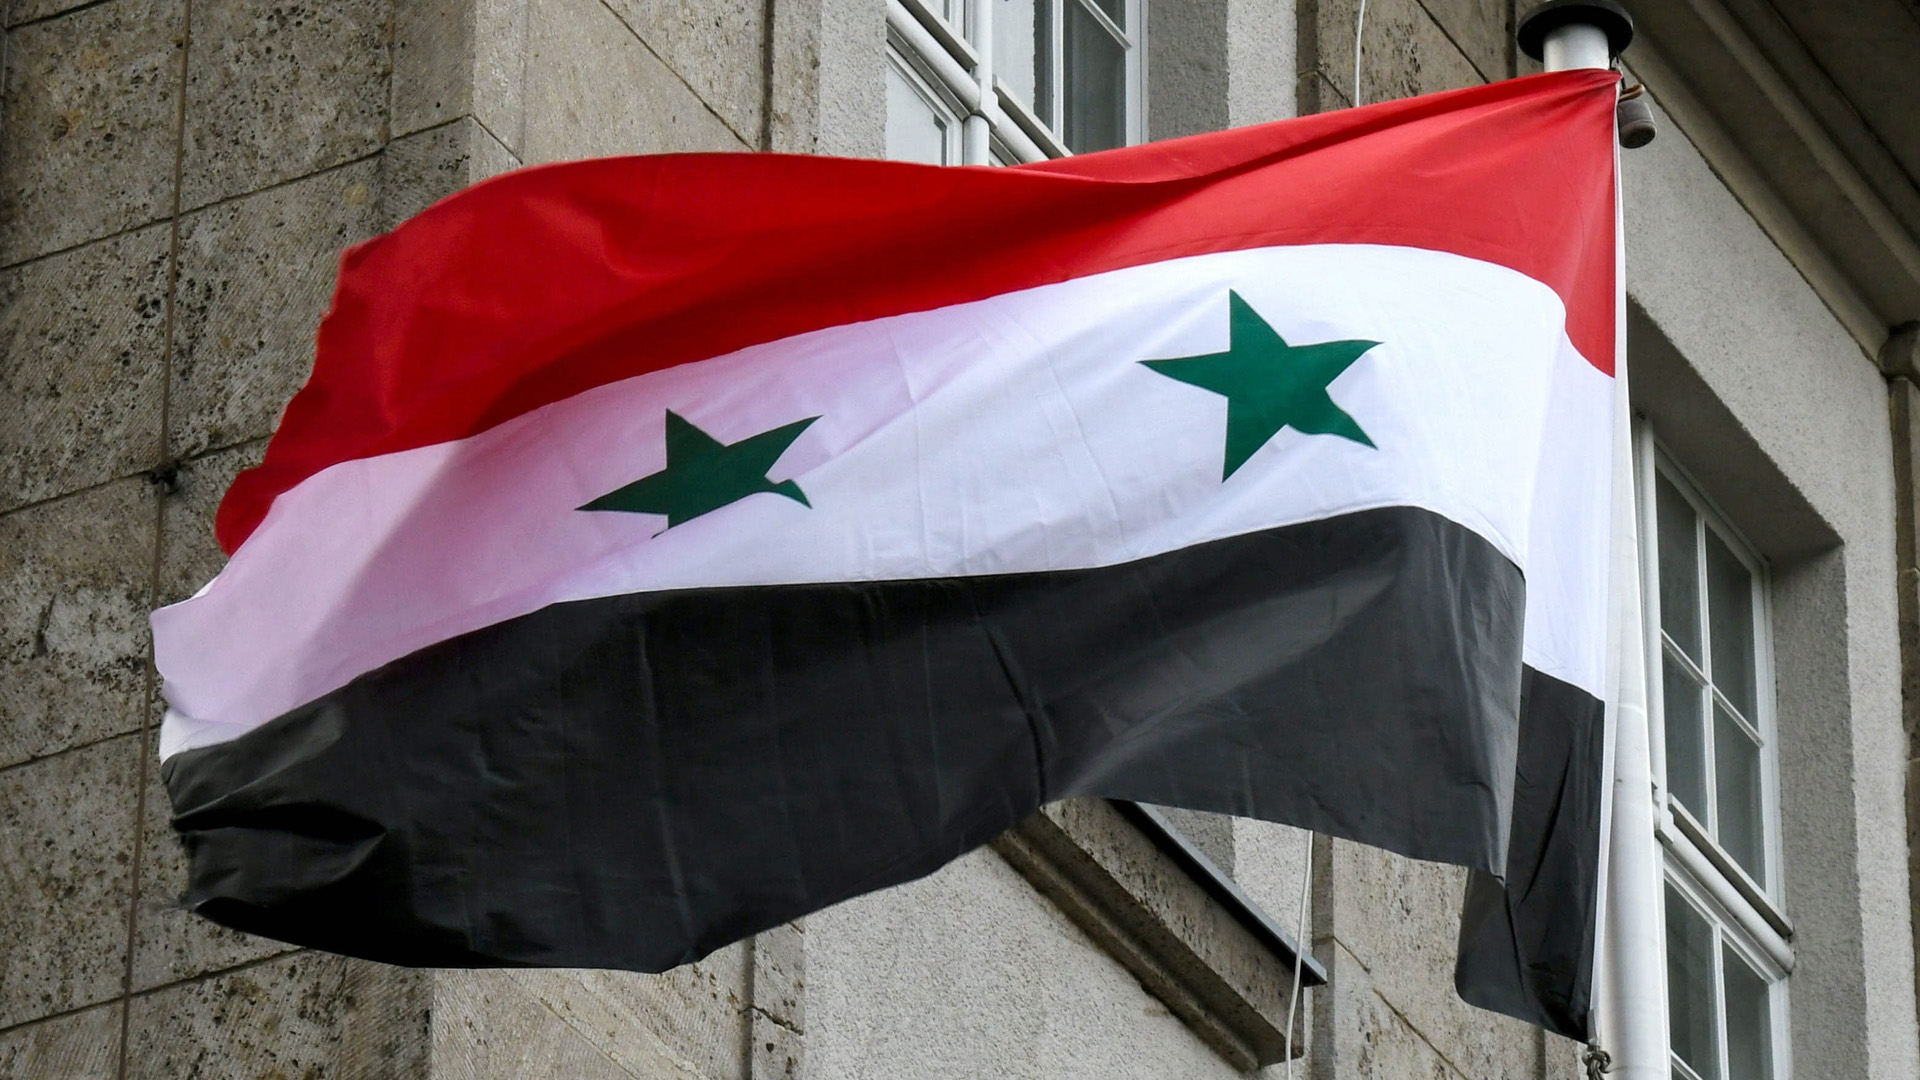 Passgebühren für Syrer – Finanzspritze für Assads Krieg?